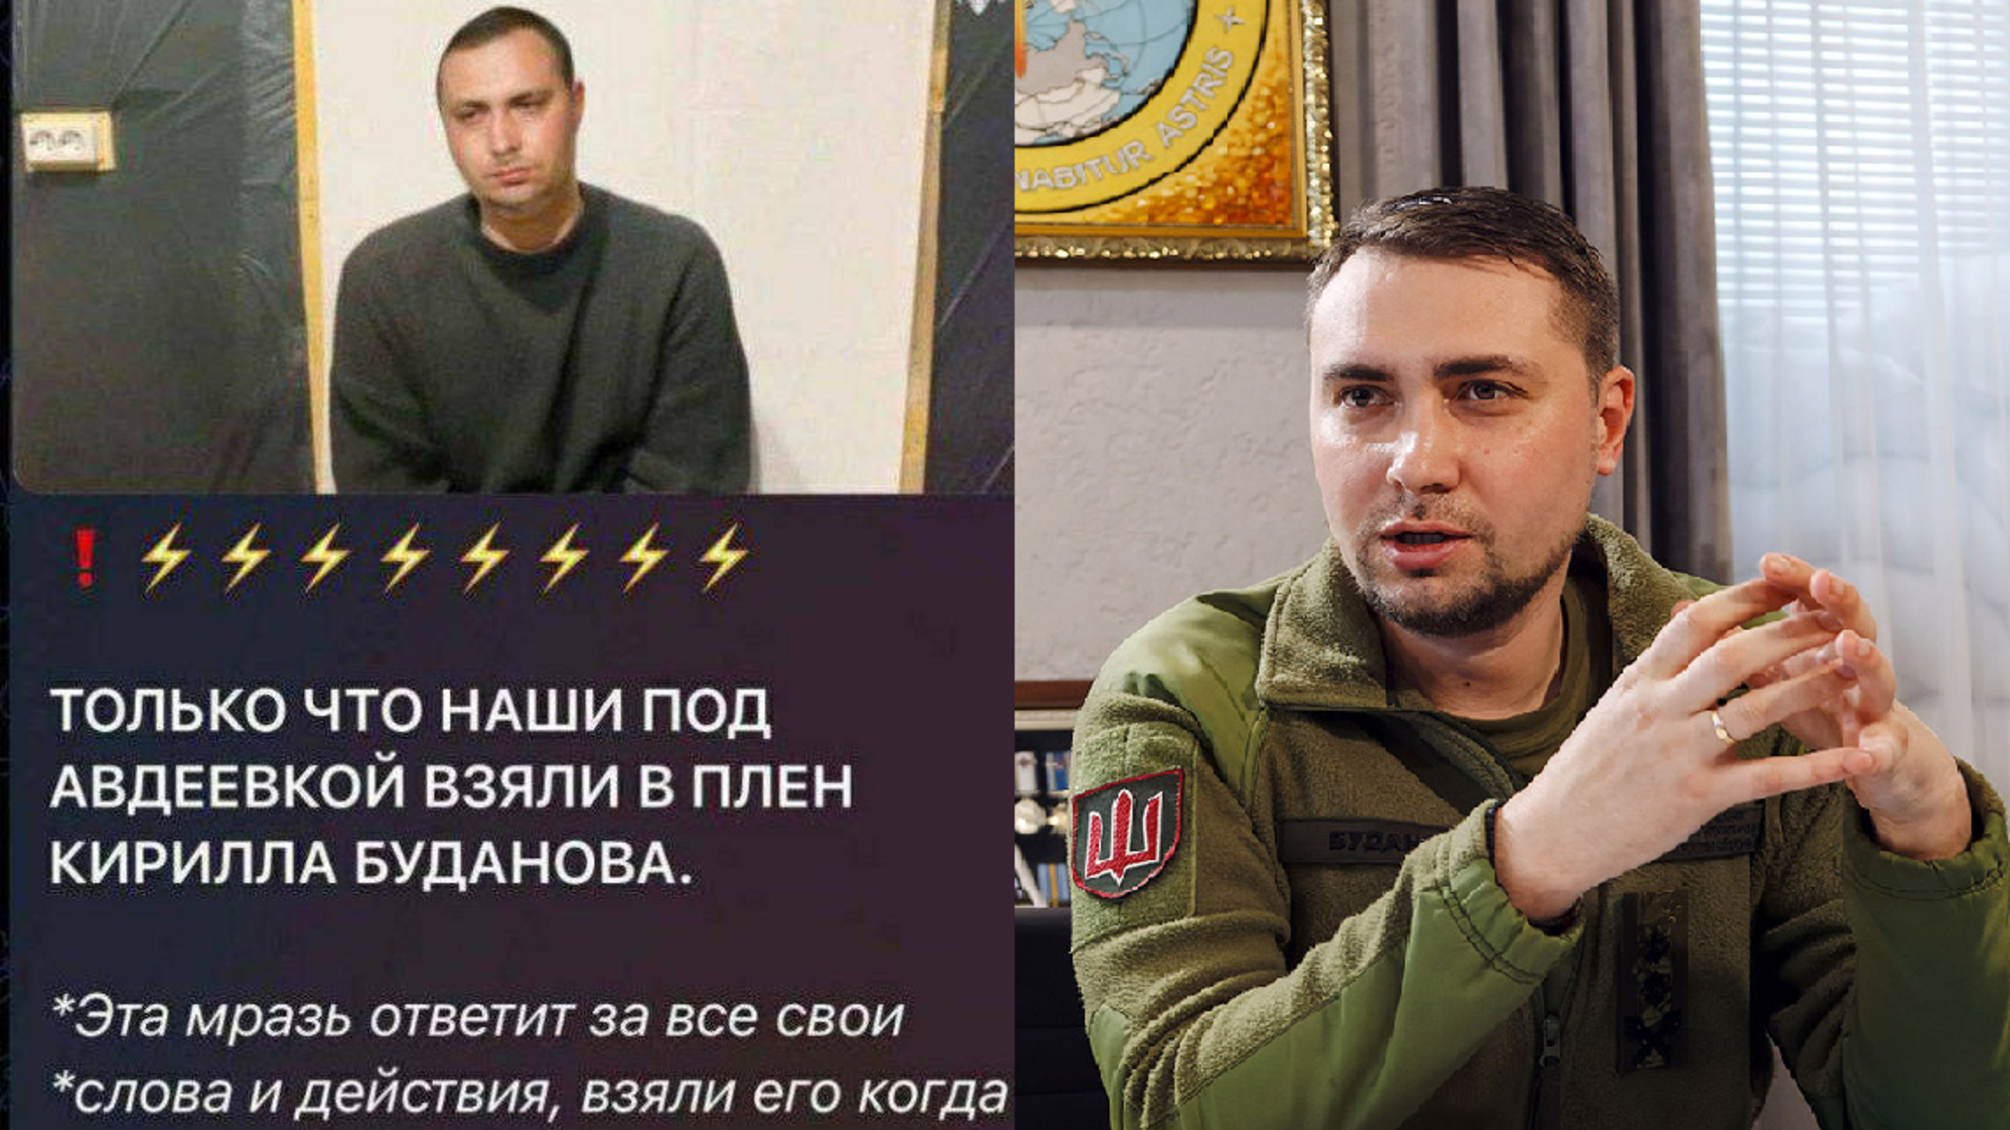 Россияне распространяют фейк о якобы взятии в плен главы ГУР Кирилла Буданова